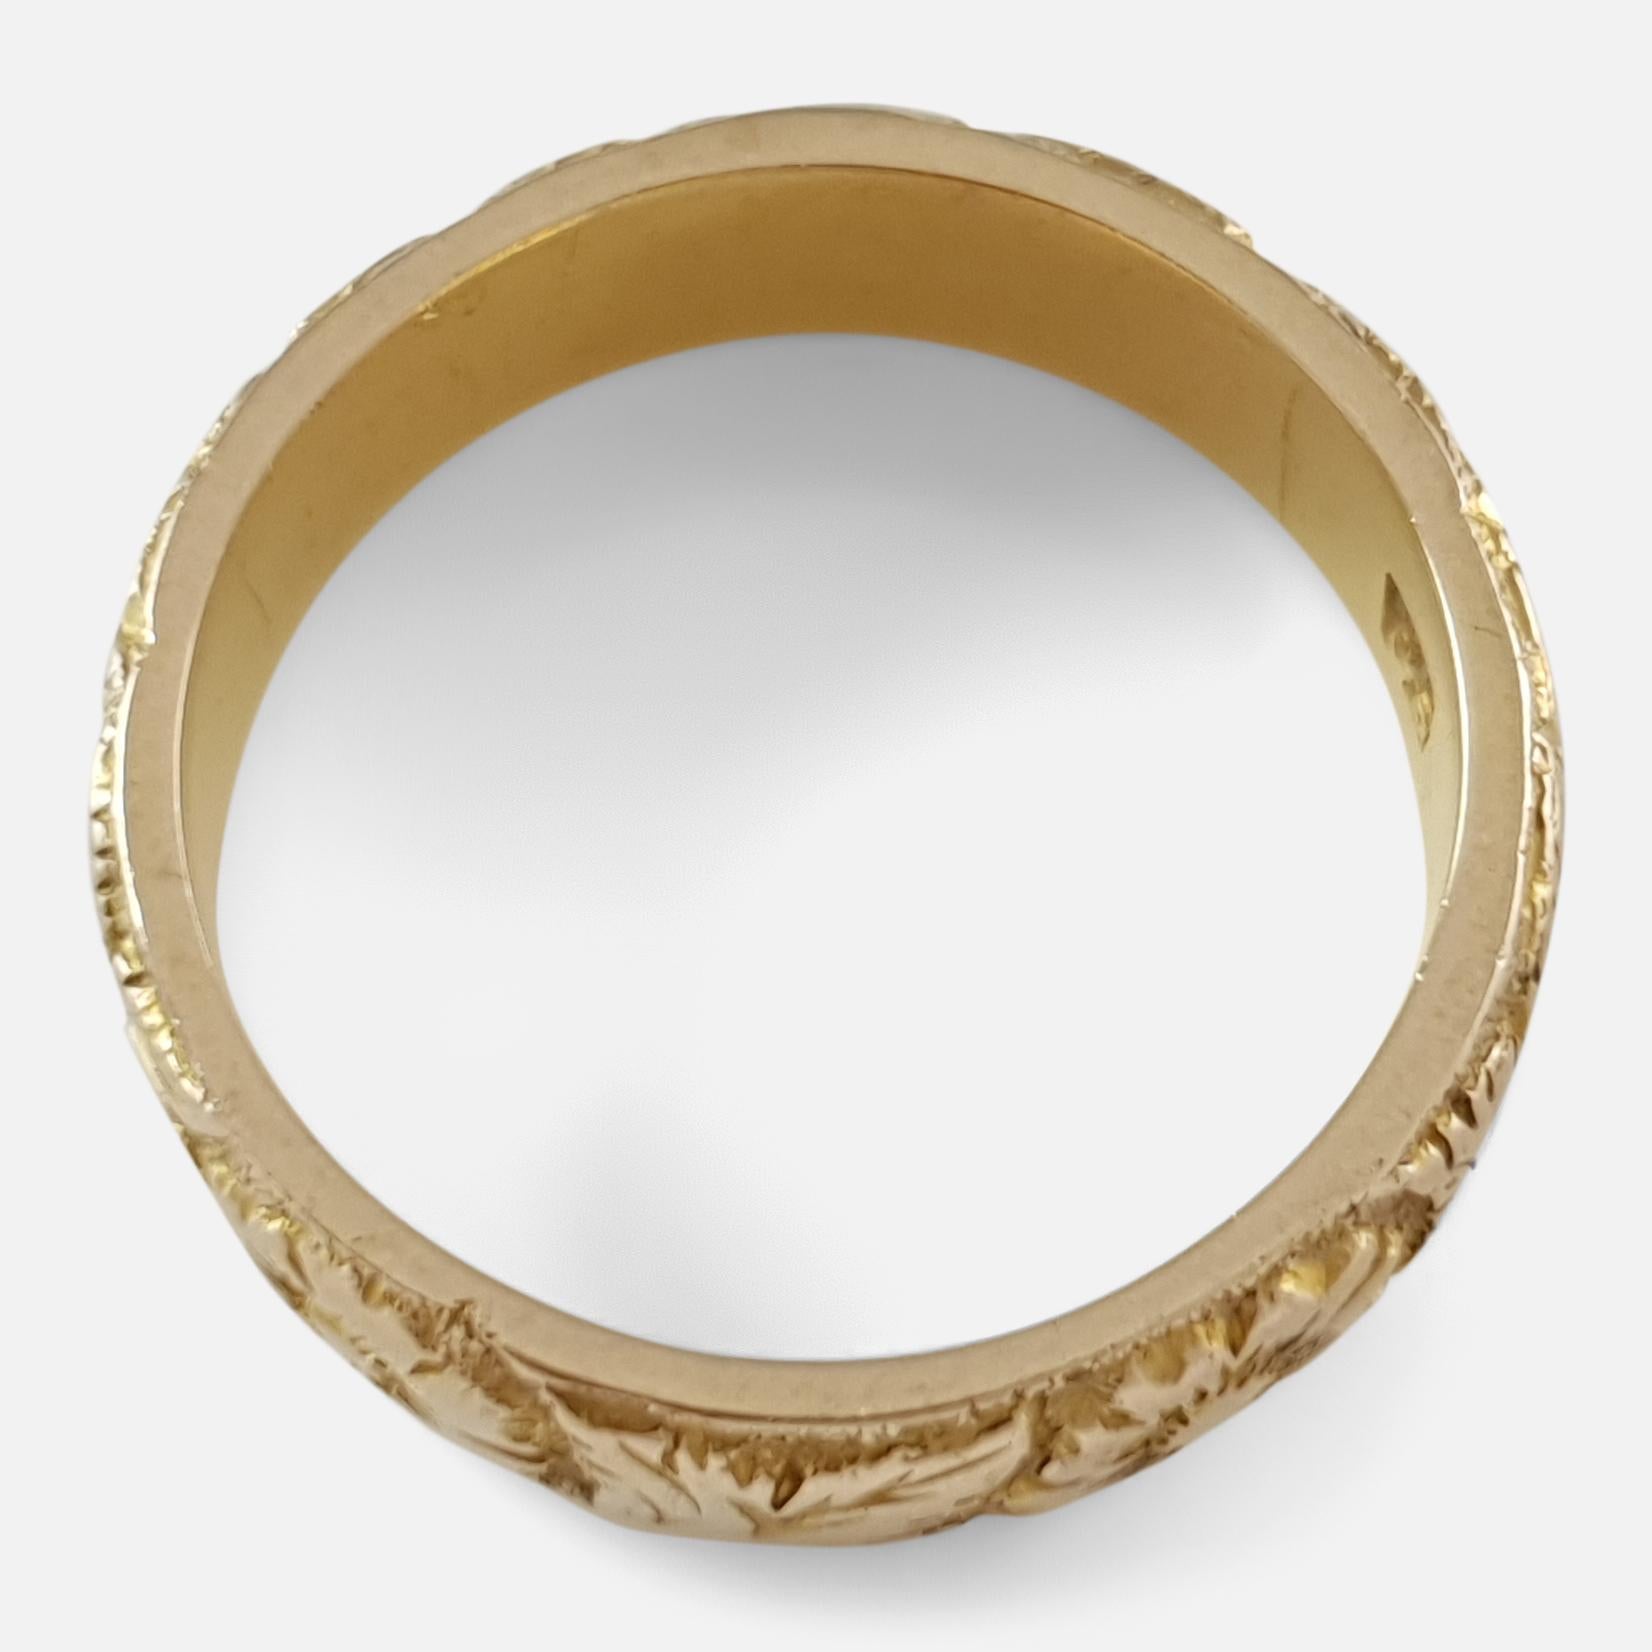 Victorian 18 Karat Yellow Gold Foliate Engraved Wedding Band Ring 2